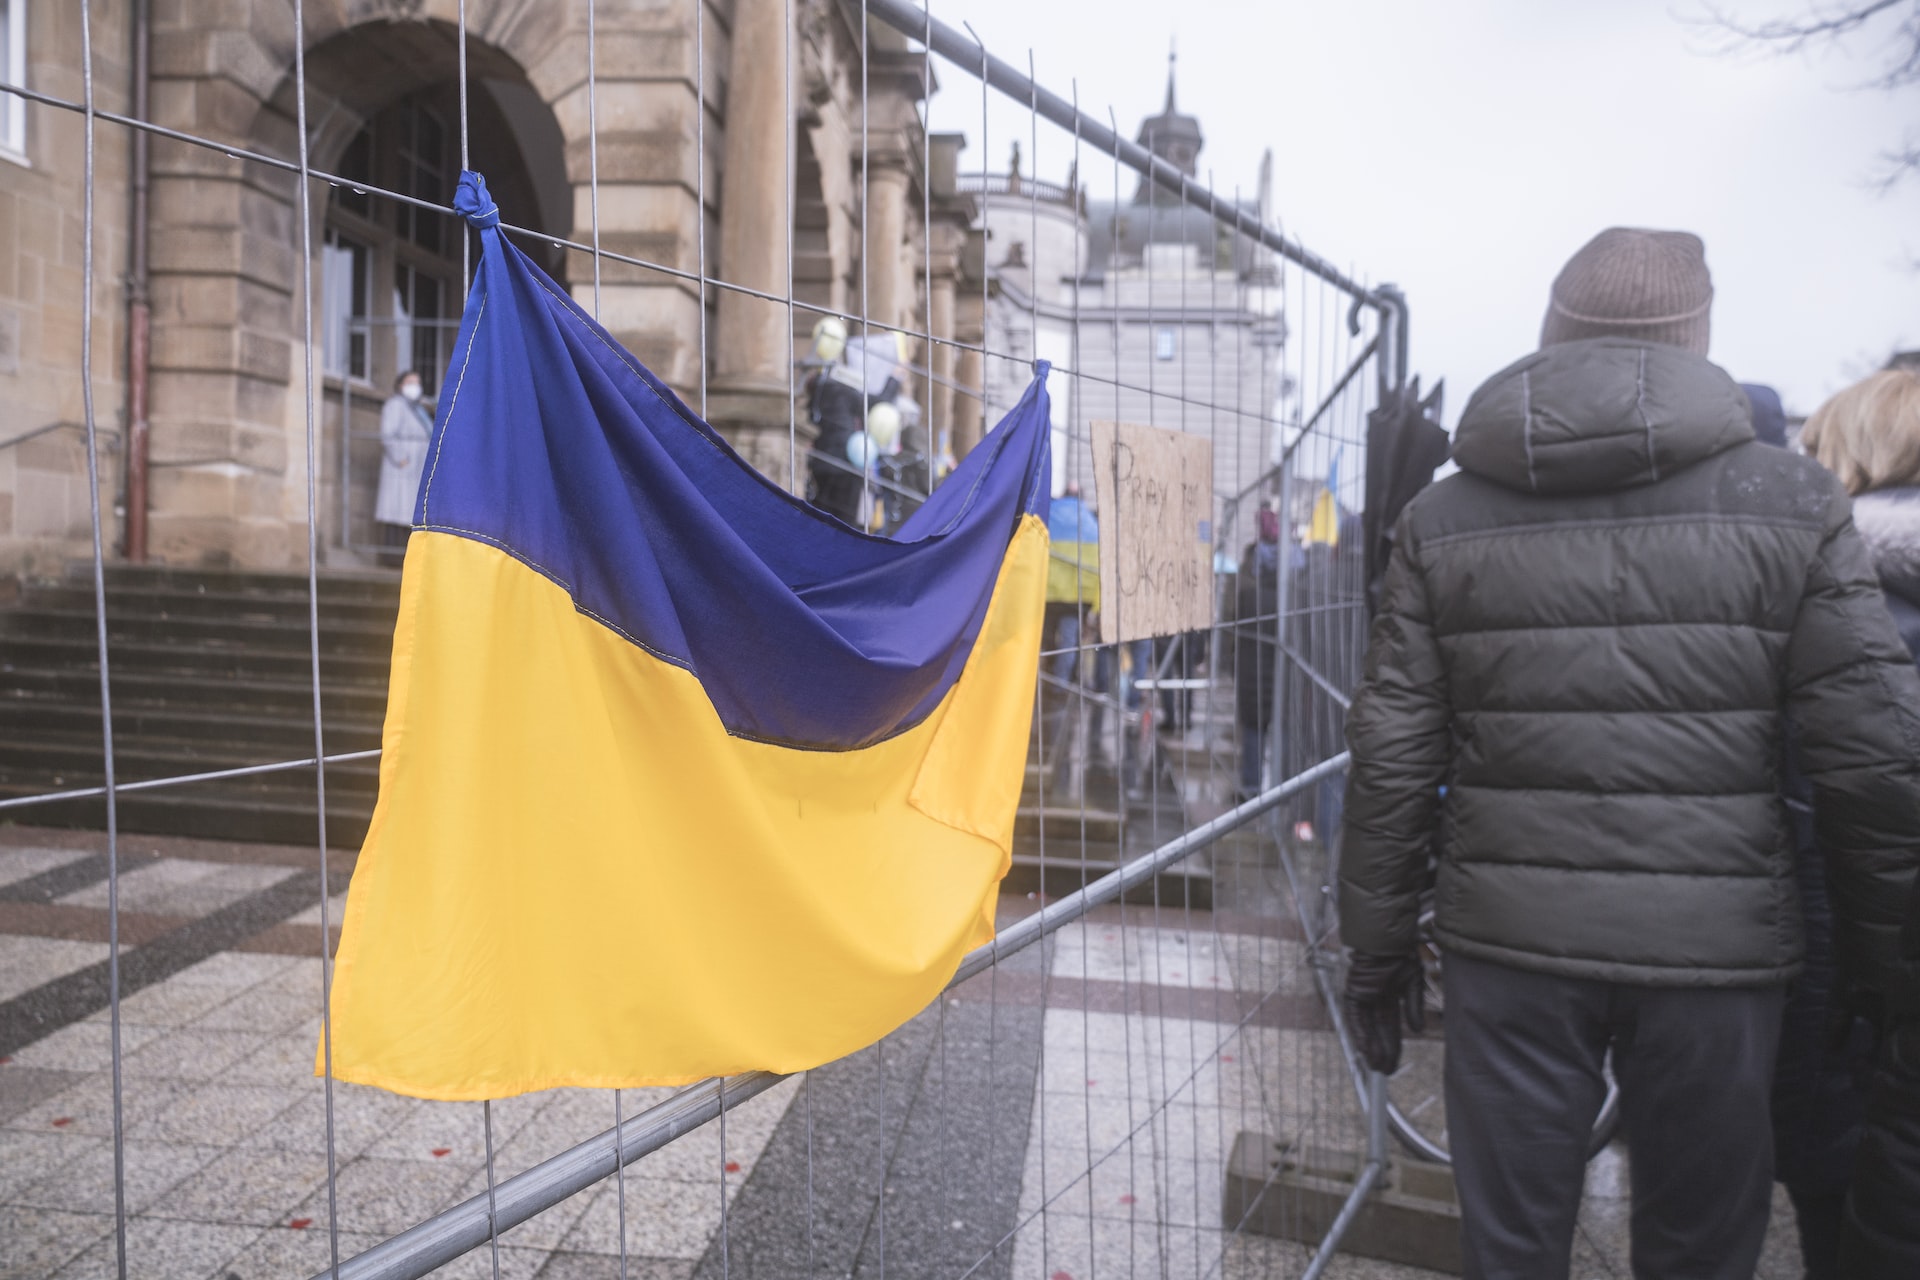 Hollanda Başbakanı Rutte: "Ukrayna'daki savaş bizim savaşımız"